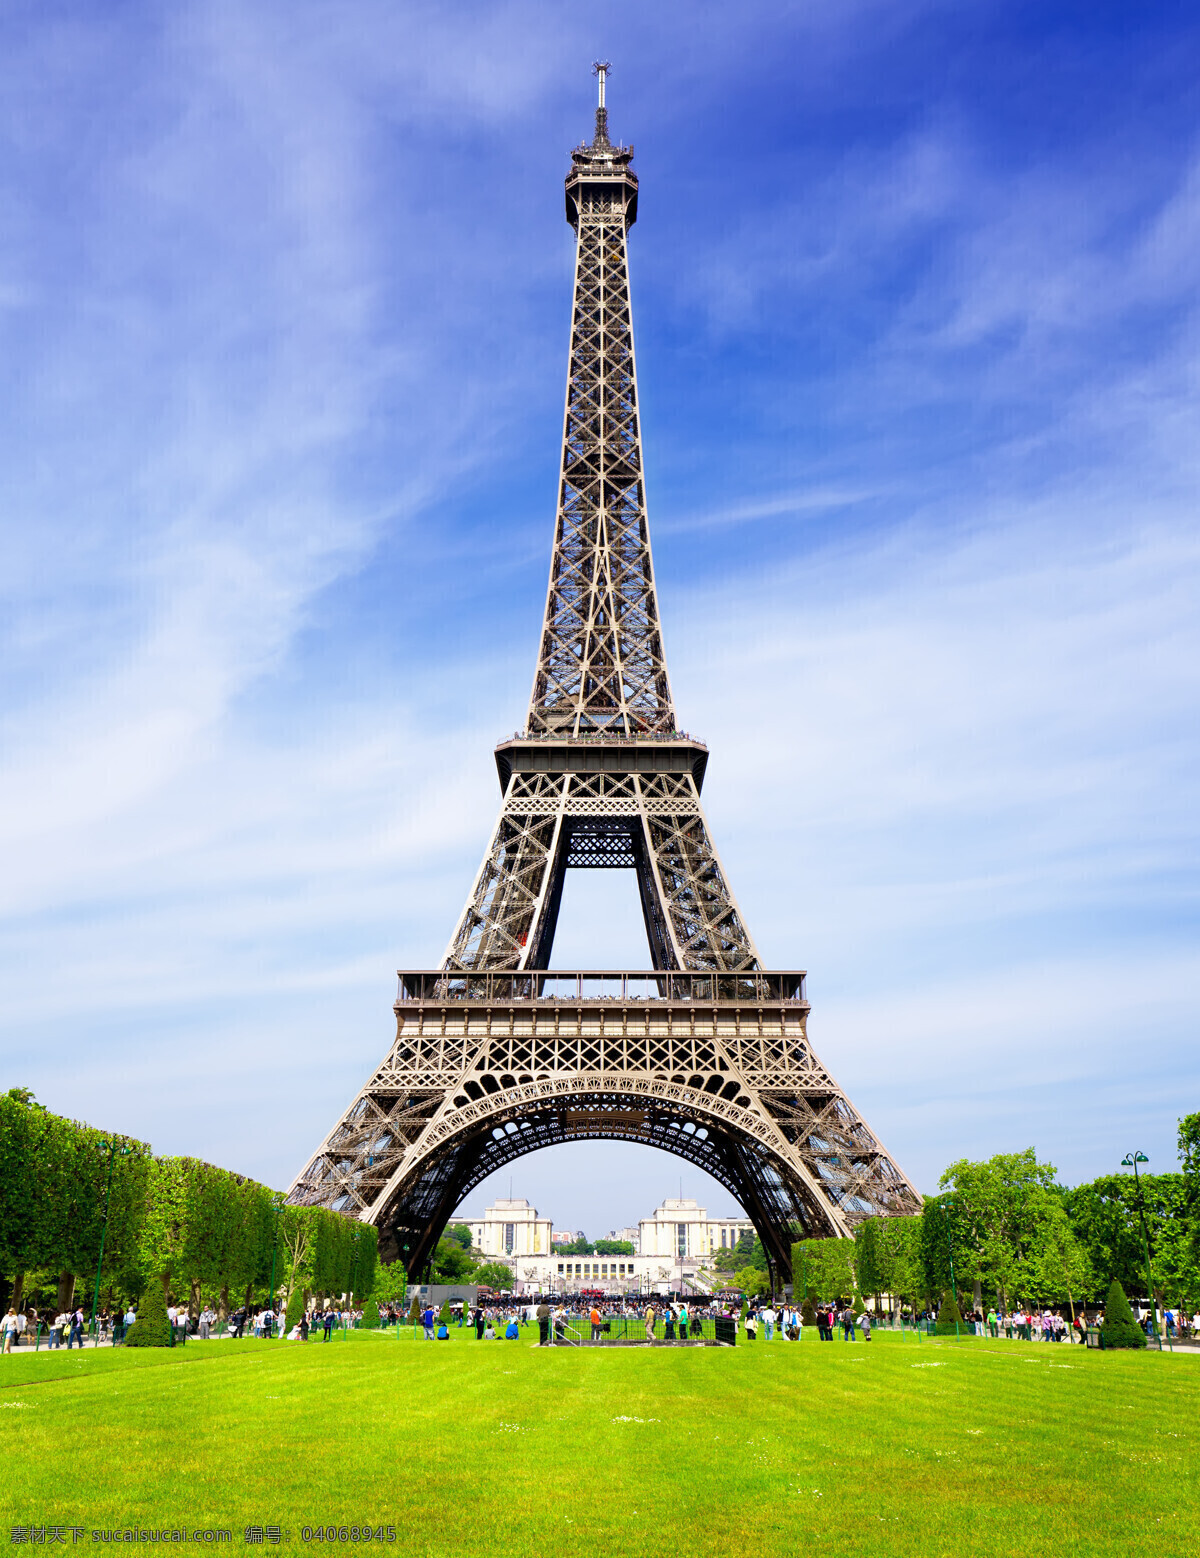 艾菲尔铁塔 艾菲尔 铁塔 法国 巴黎 巴黎铁塔 埃菲尔 埃菲尔铁塔 法国铁塔 著名建筑 法国著名建筑 法国旅游 巴黎旅游 法国巴黎 建筑 城市 旅游摄影 国外旅游